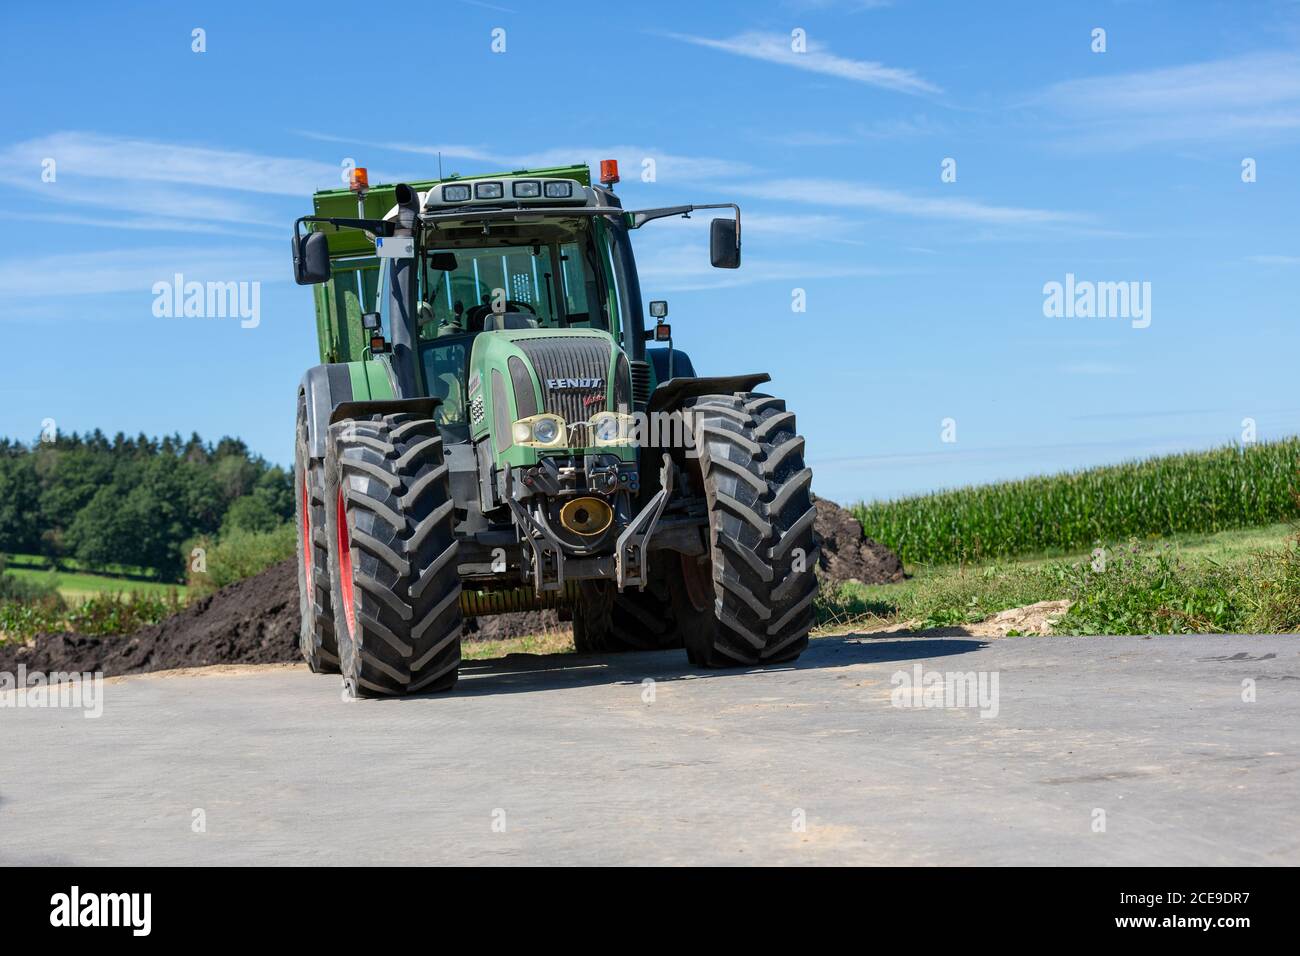 BAYERN / DEUTSCHLAND - 20. AUGUST 2020: Fendt Traktor mit Ladewagen, arbeitet an einer Biogasanlage Stockfoto